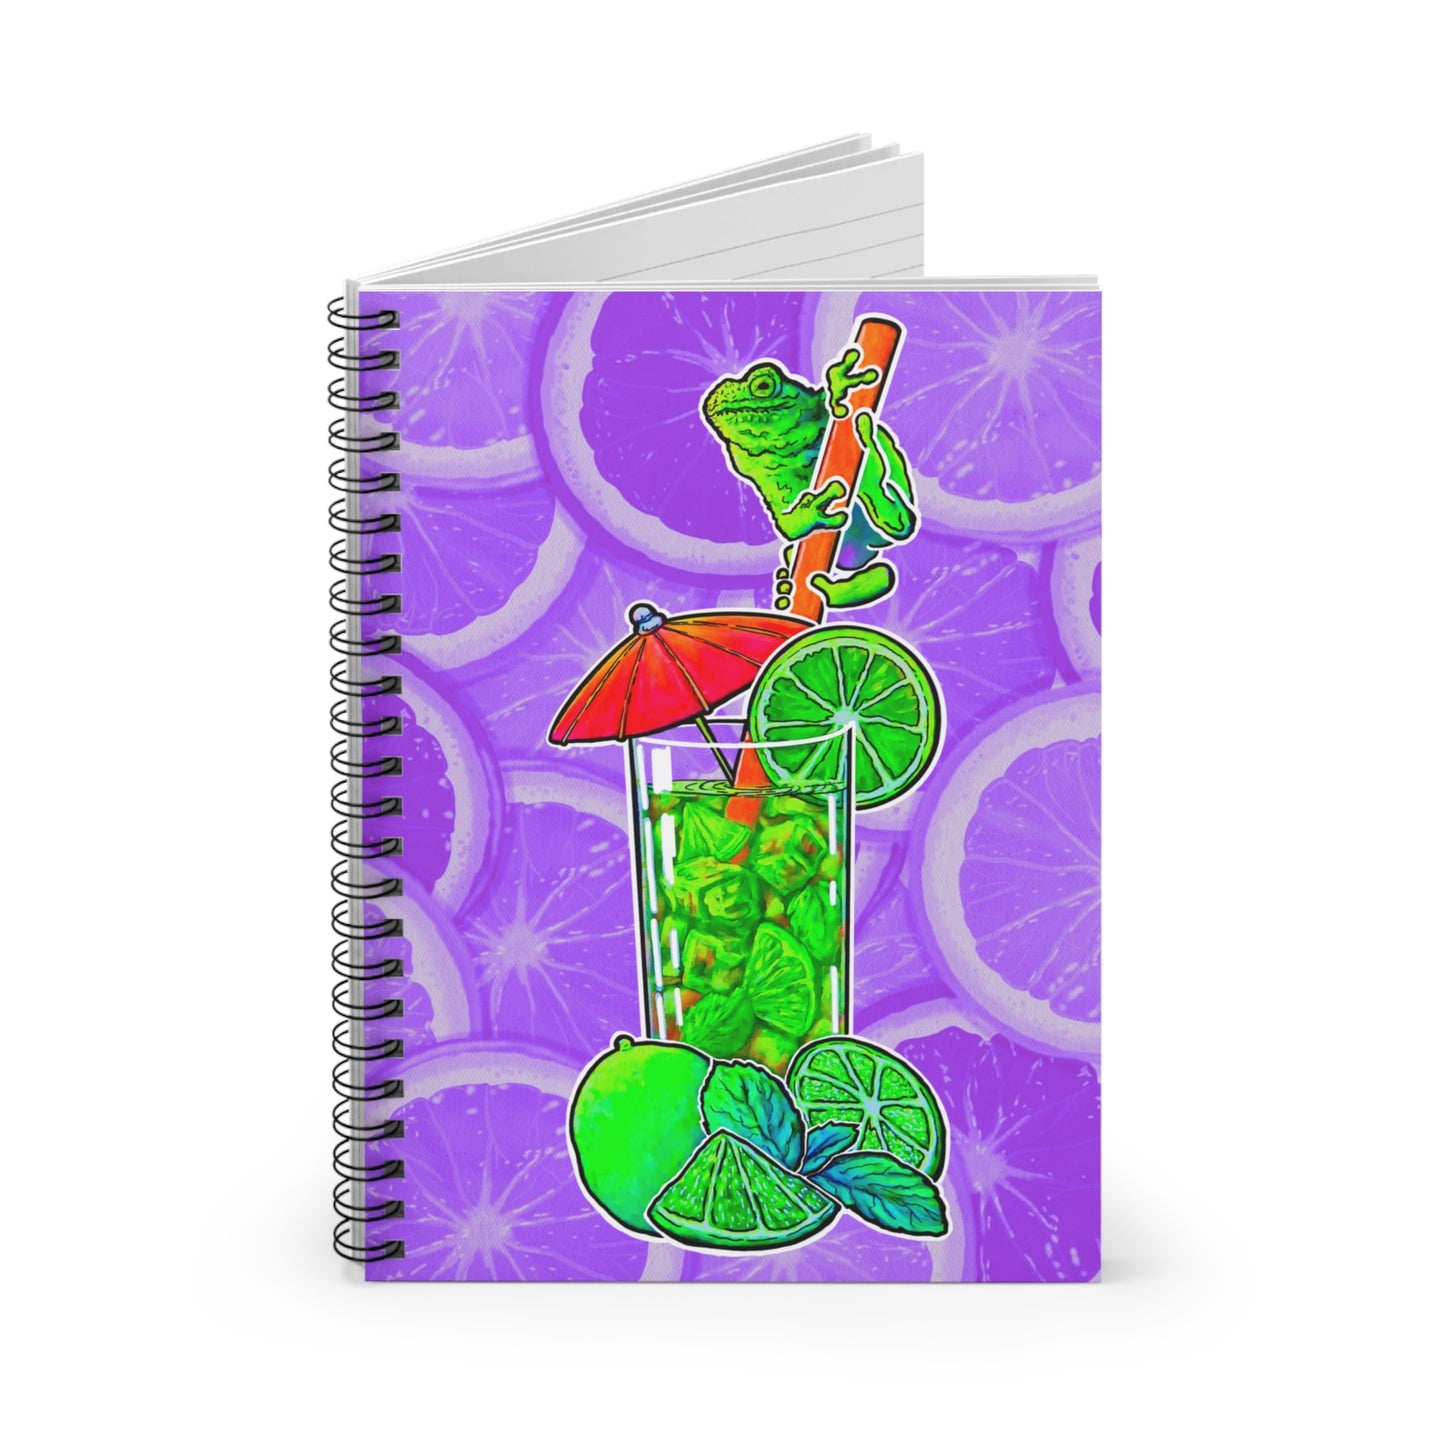 Spiral Notebook - Ruled Line - C.V. Designs